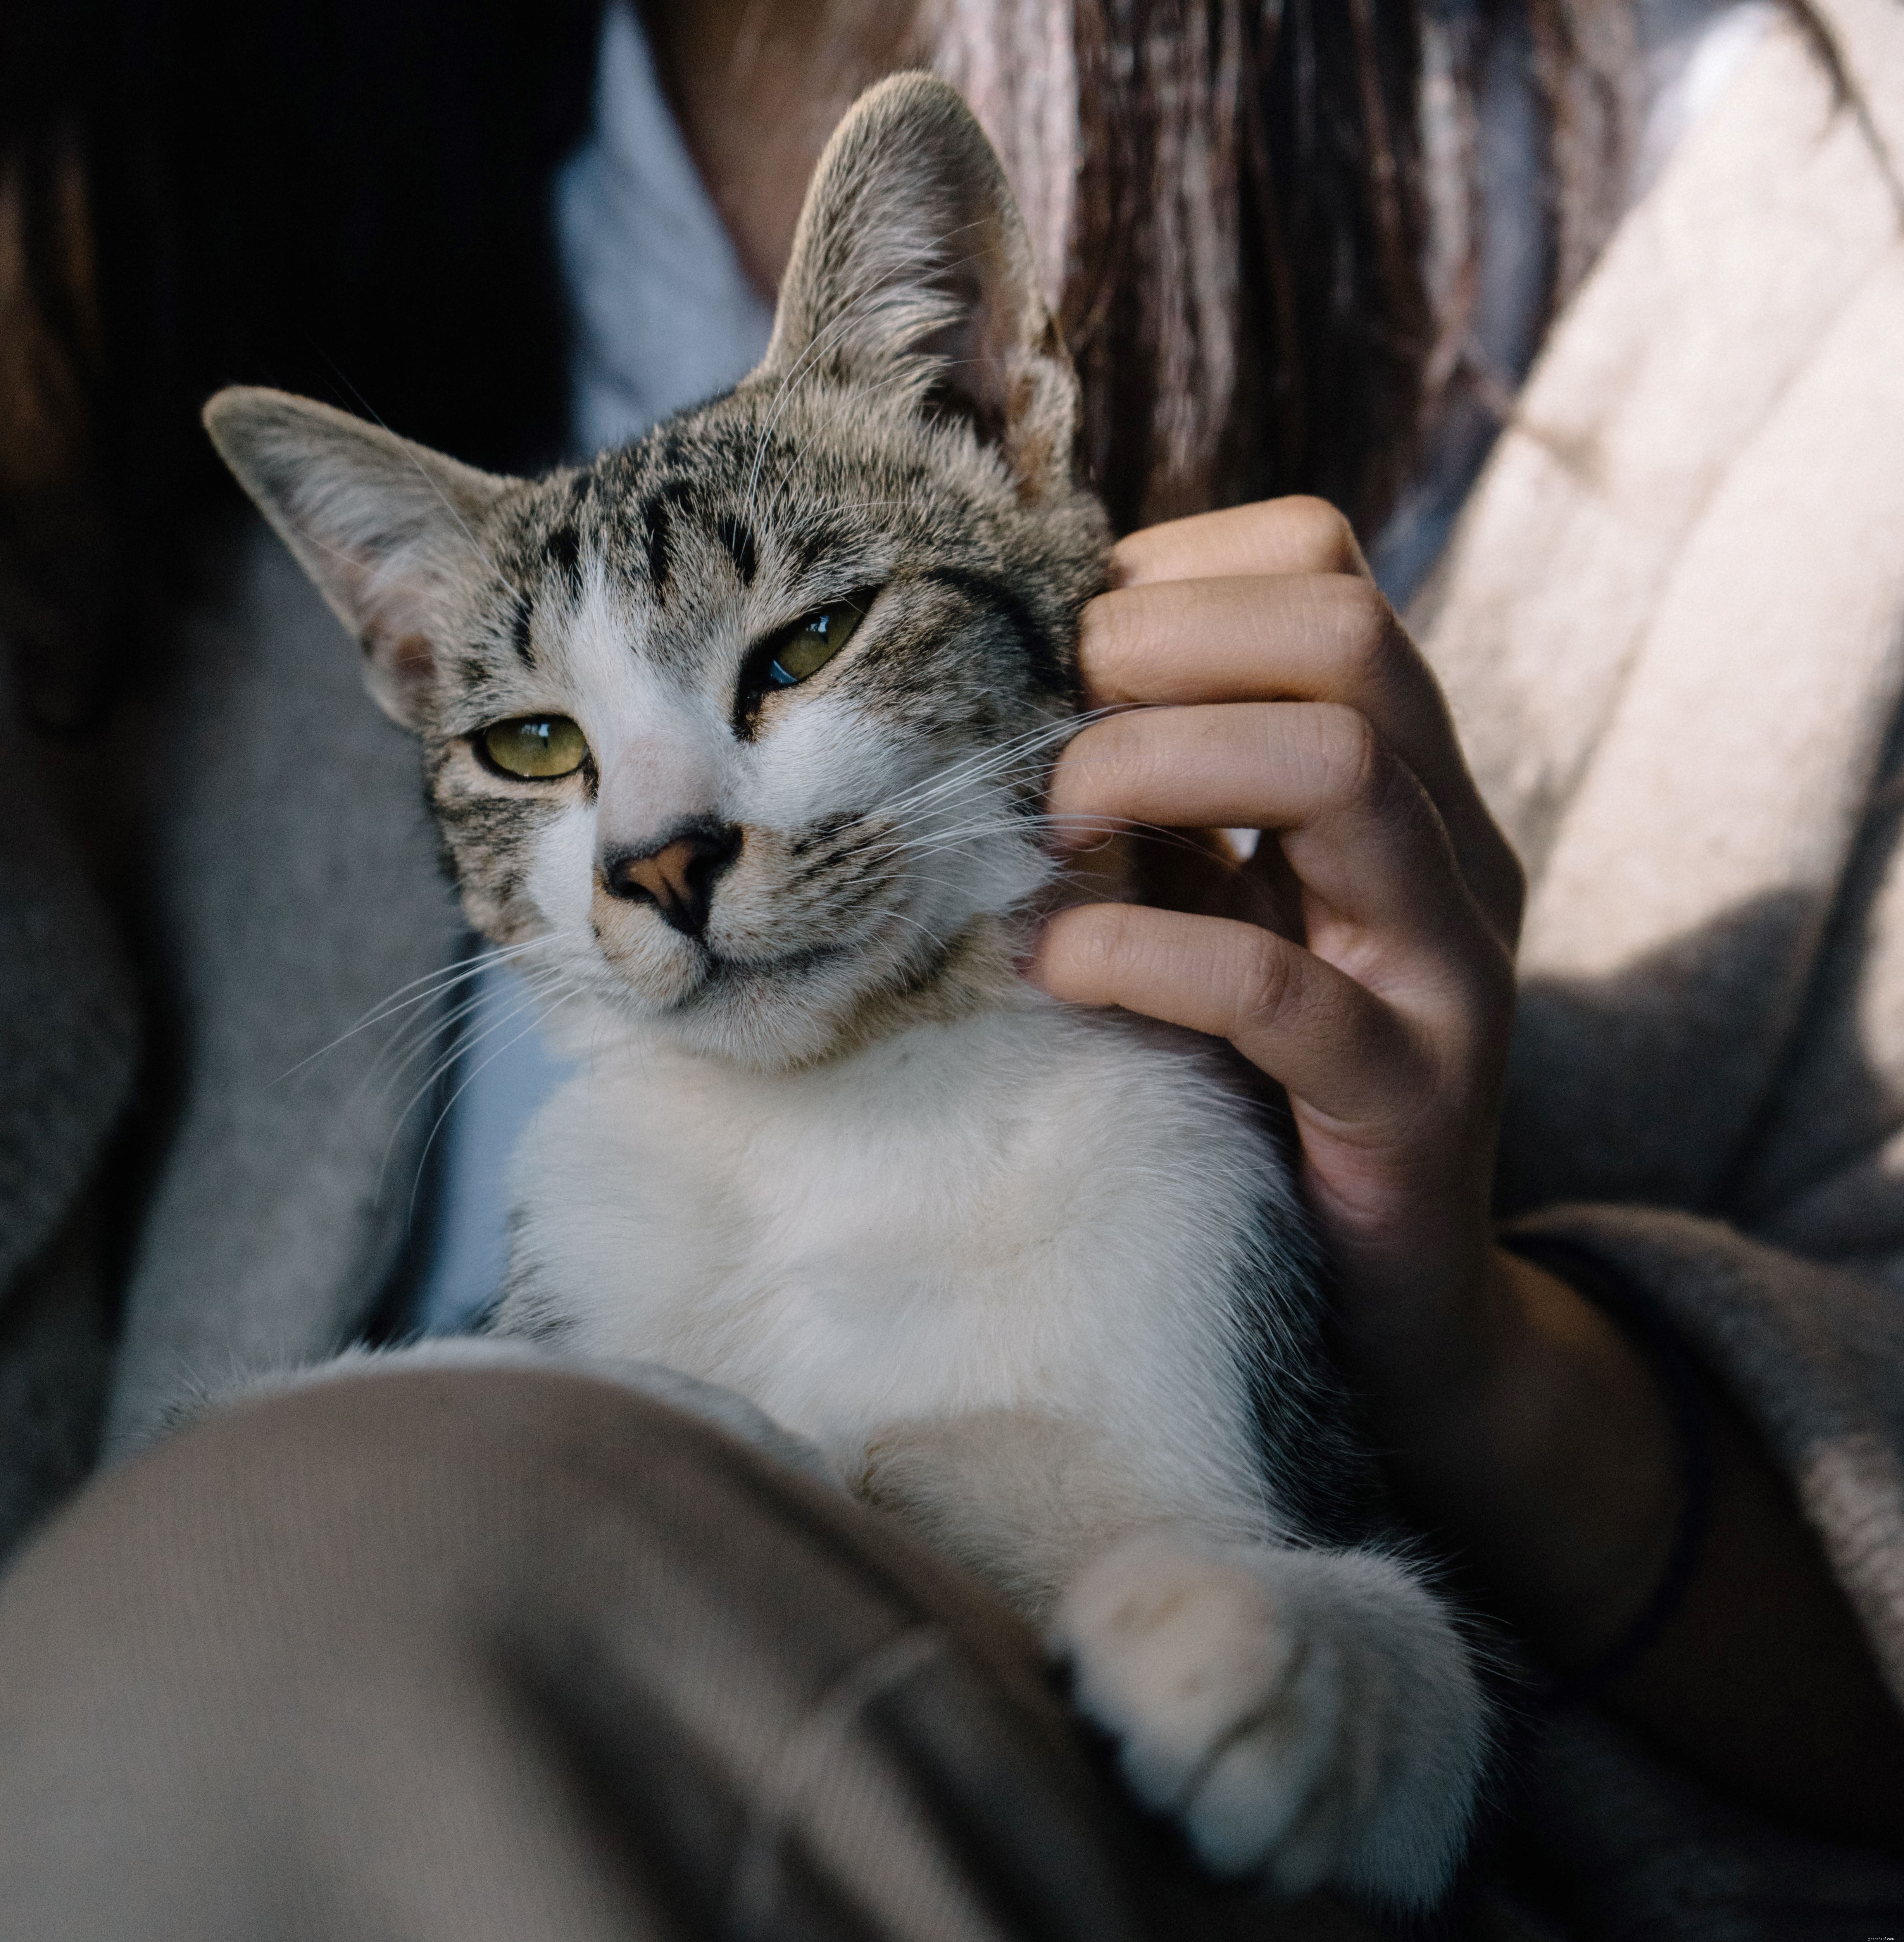 Preocupado com o fato de seu gato ser deixado sozinho com mais frequência após o bloqueio? Leia nosso guia para ajudá-los a se acostumar com uma mudança na rotina